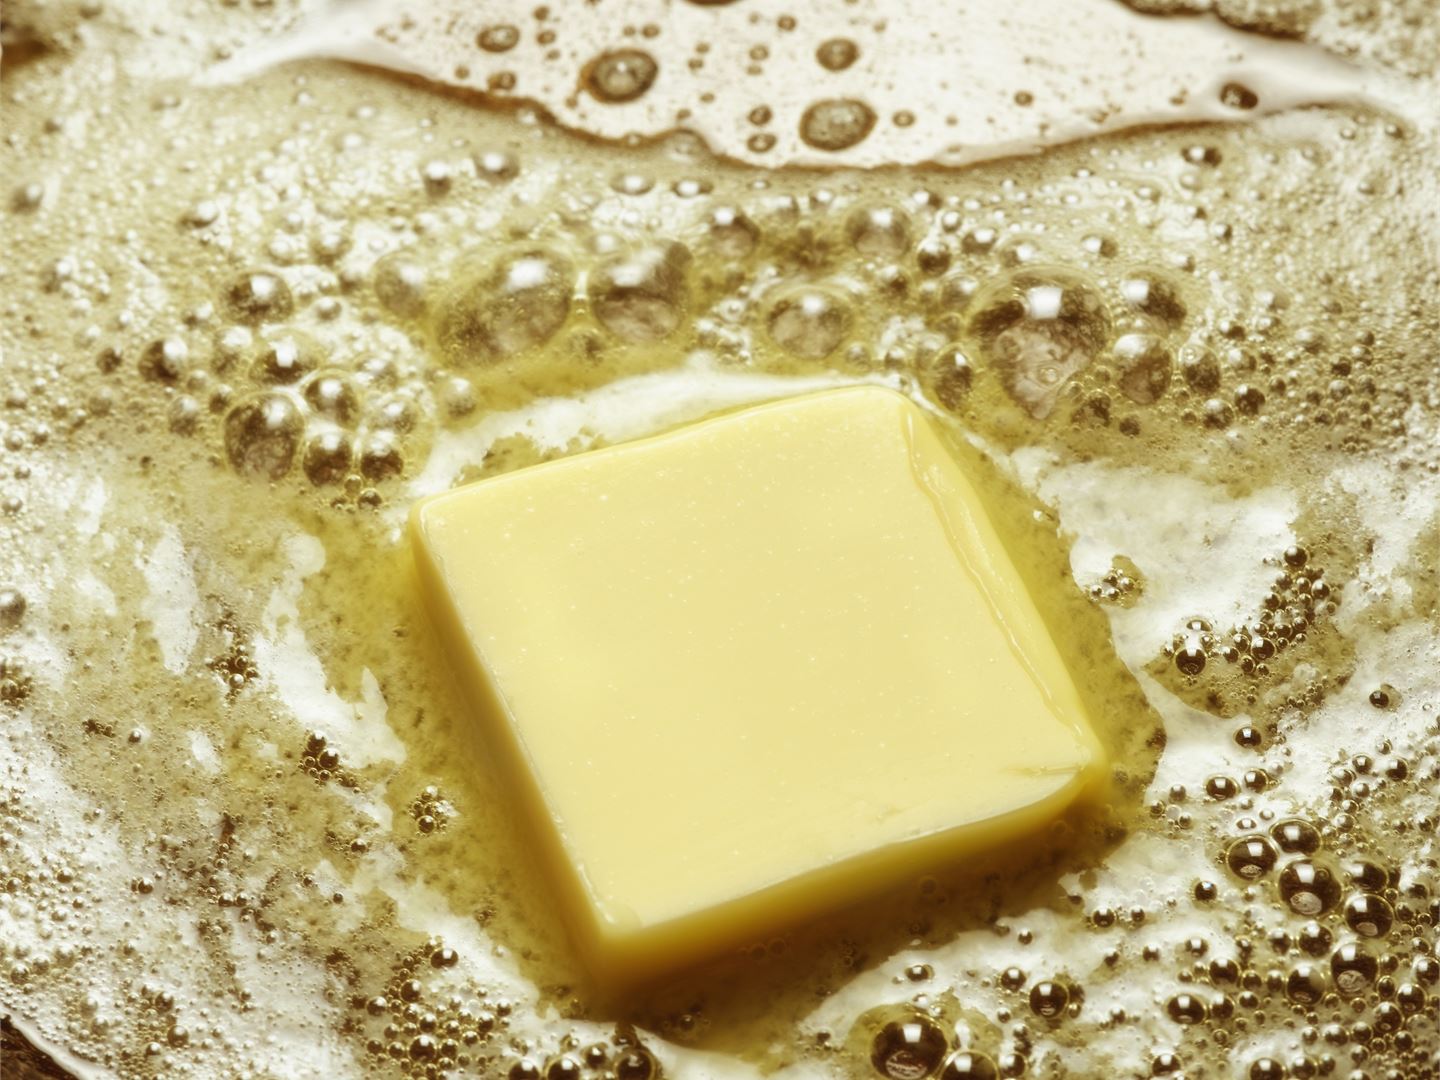 Brynt smör - en fransk favorit som ger nötig smak